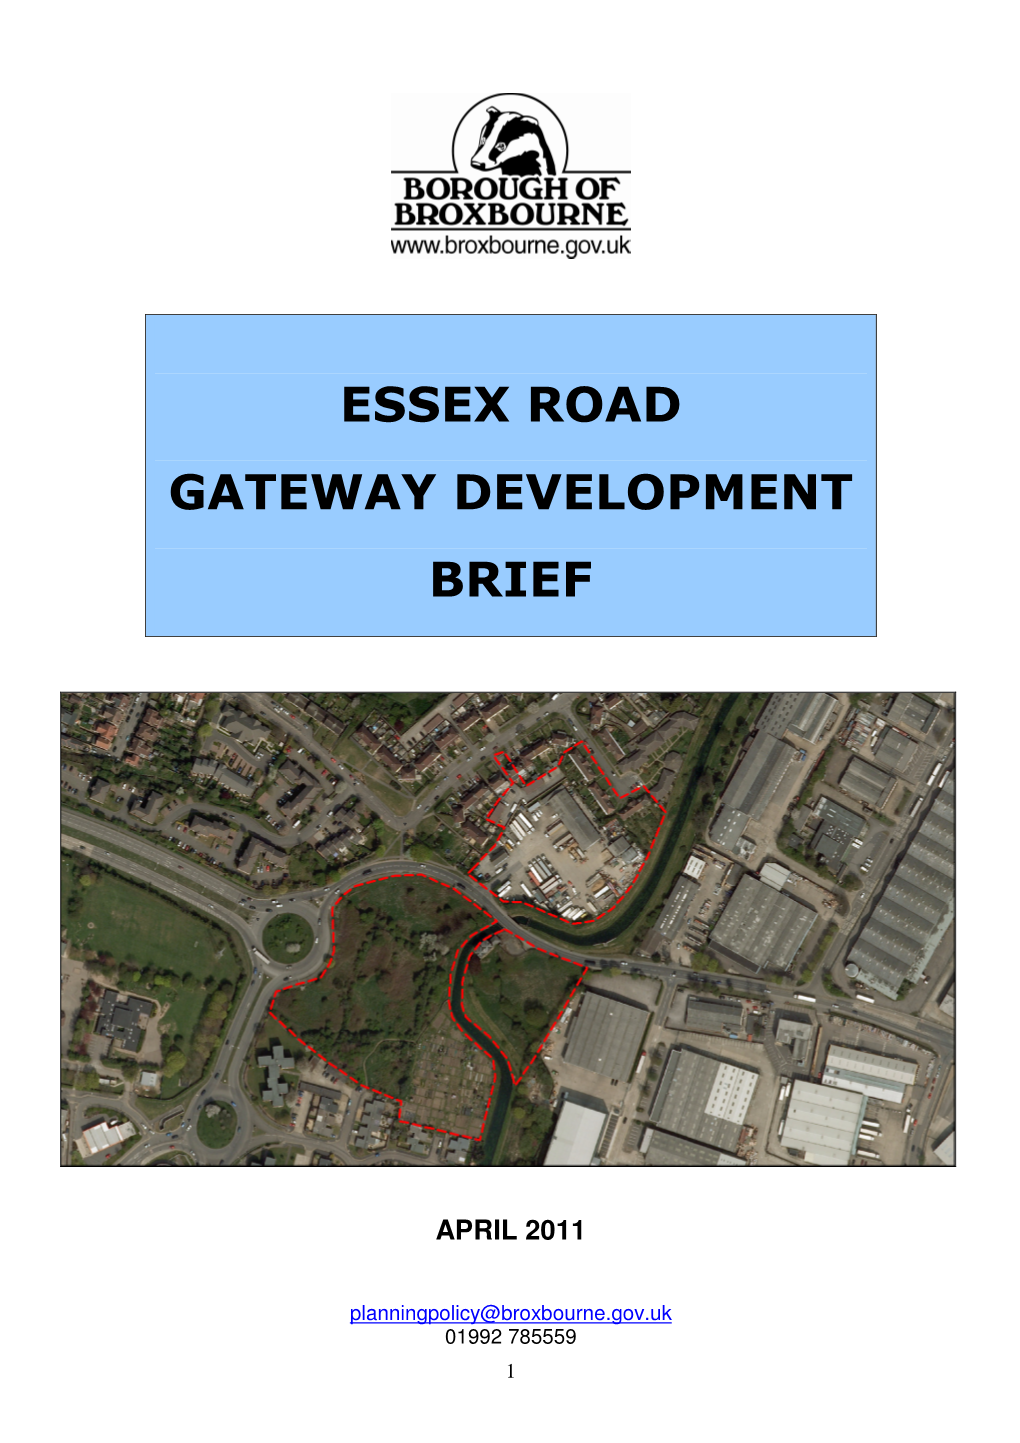 Essex Road Gateway Development Brief